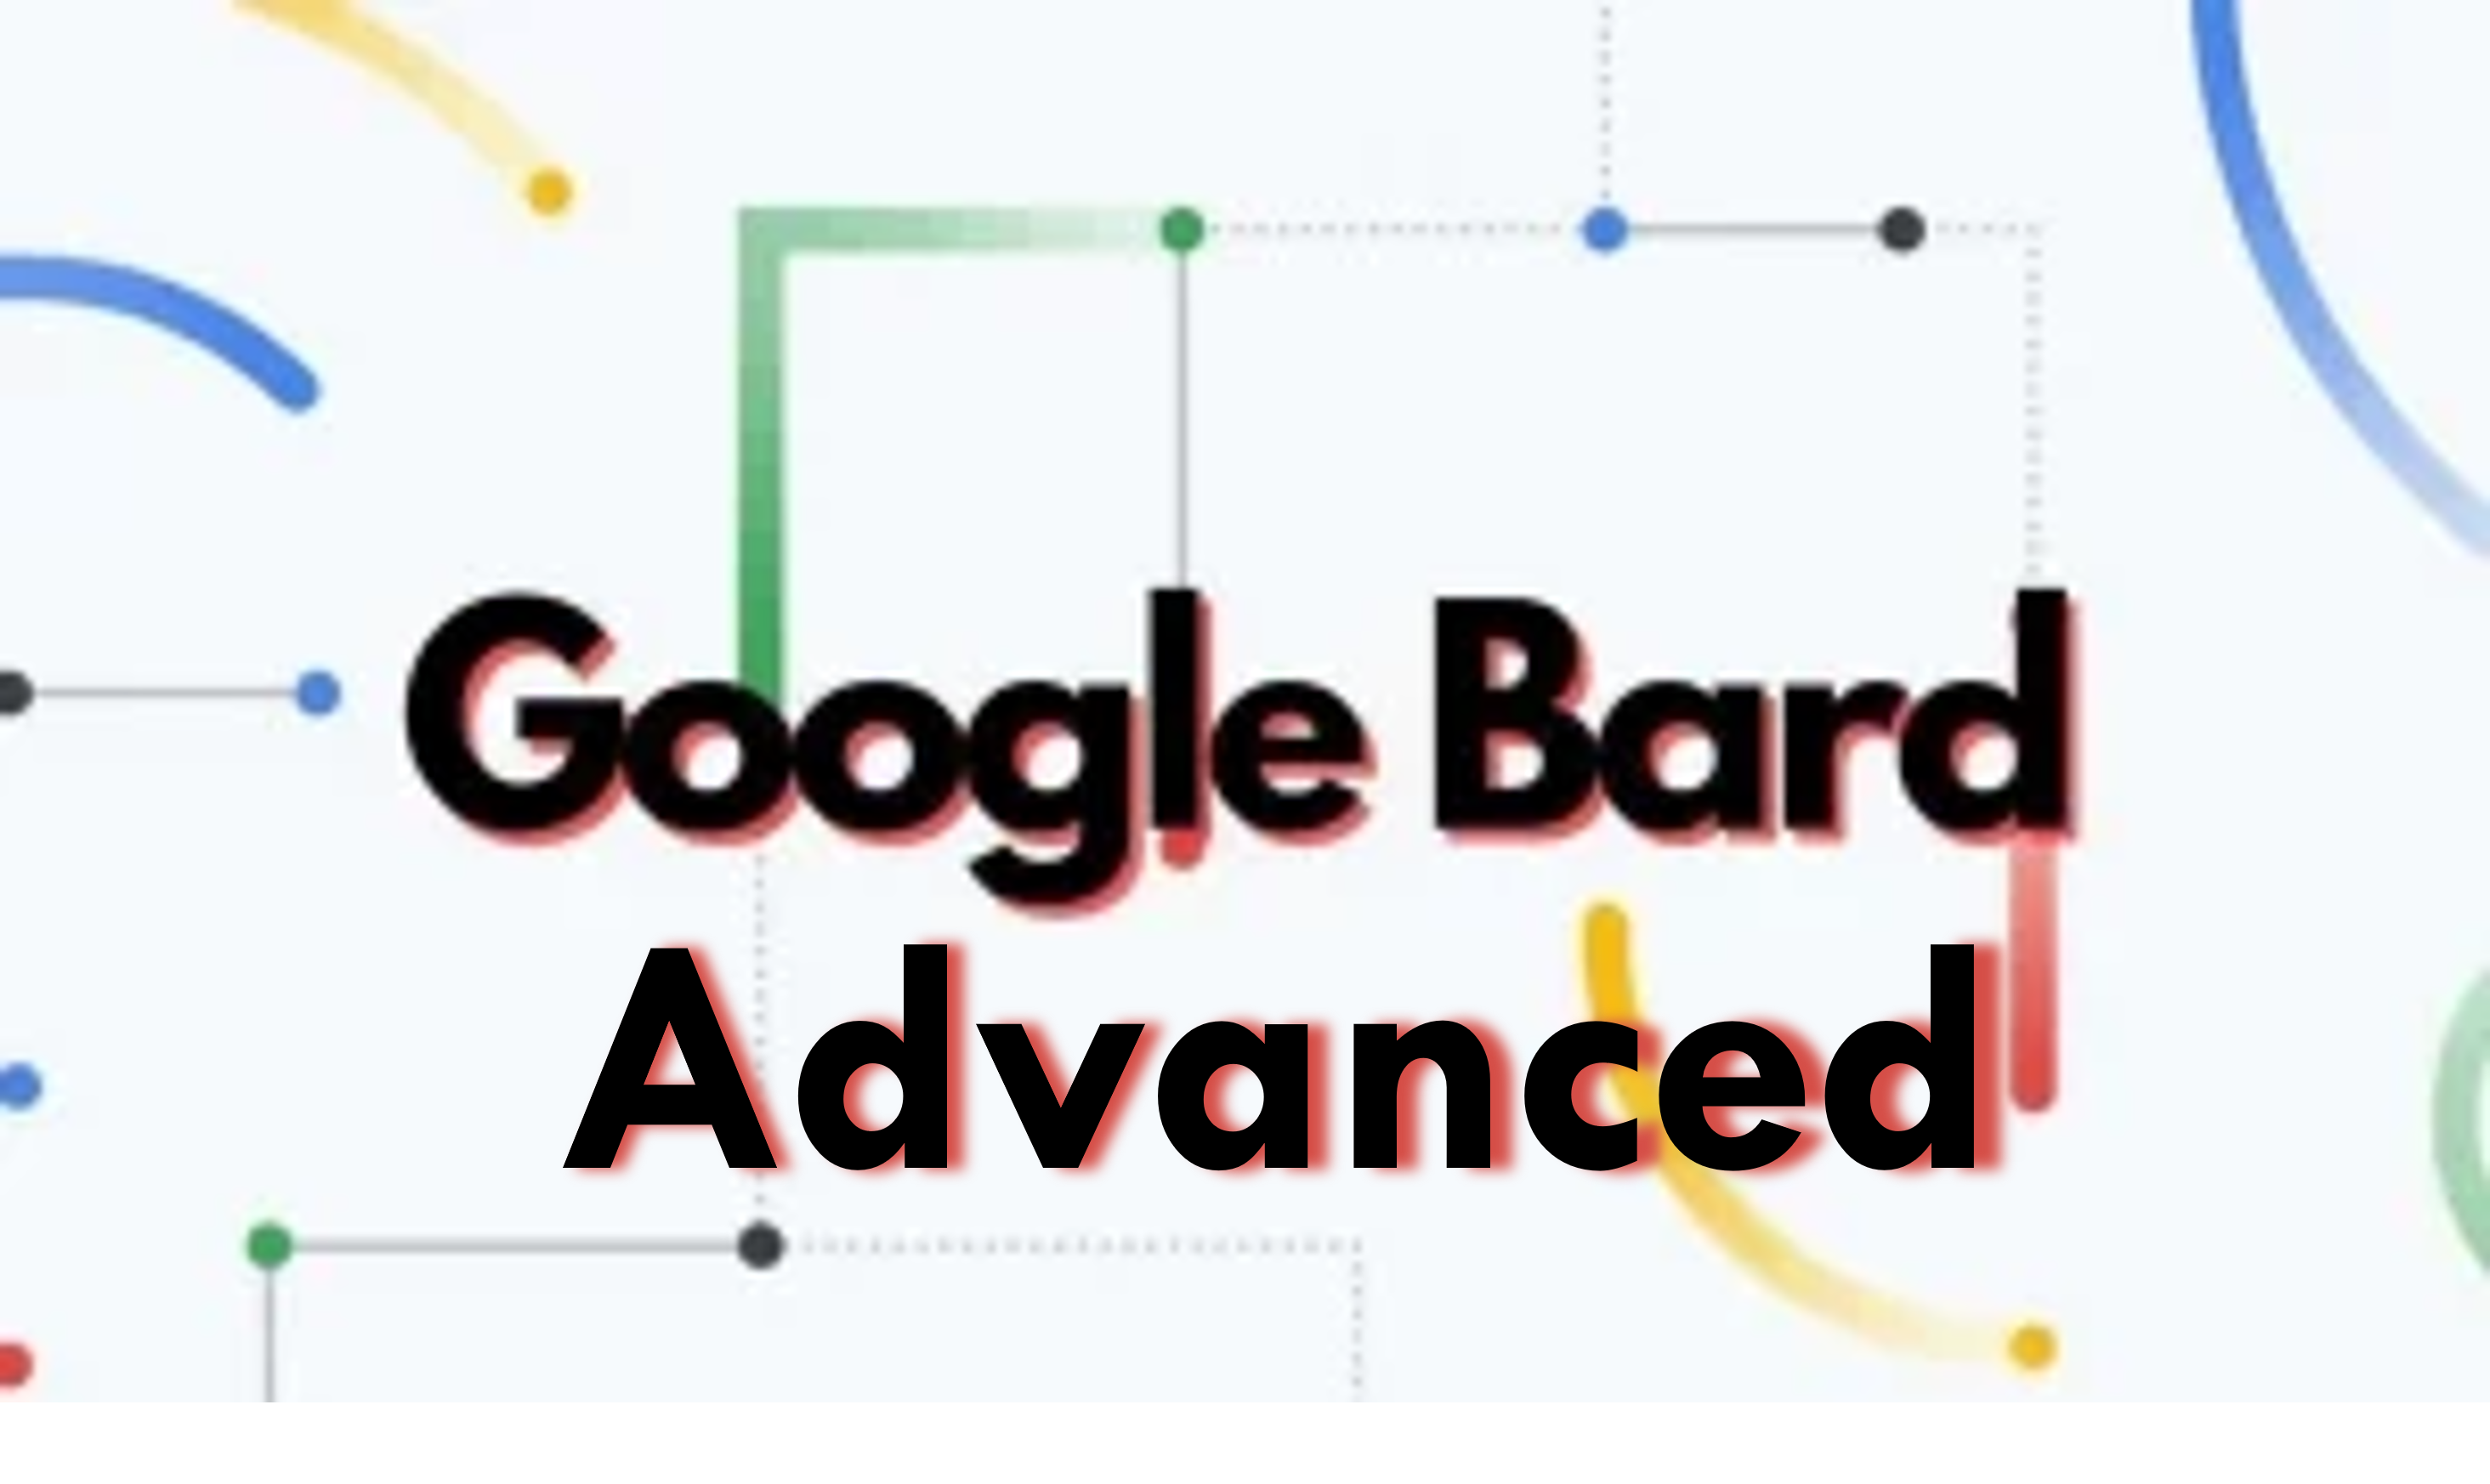 Hankige Google Bard Advancedi tasuta 3-kuuline prooviperiood; Kogege tehisintellekti vestlusrobotite tulevikku